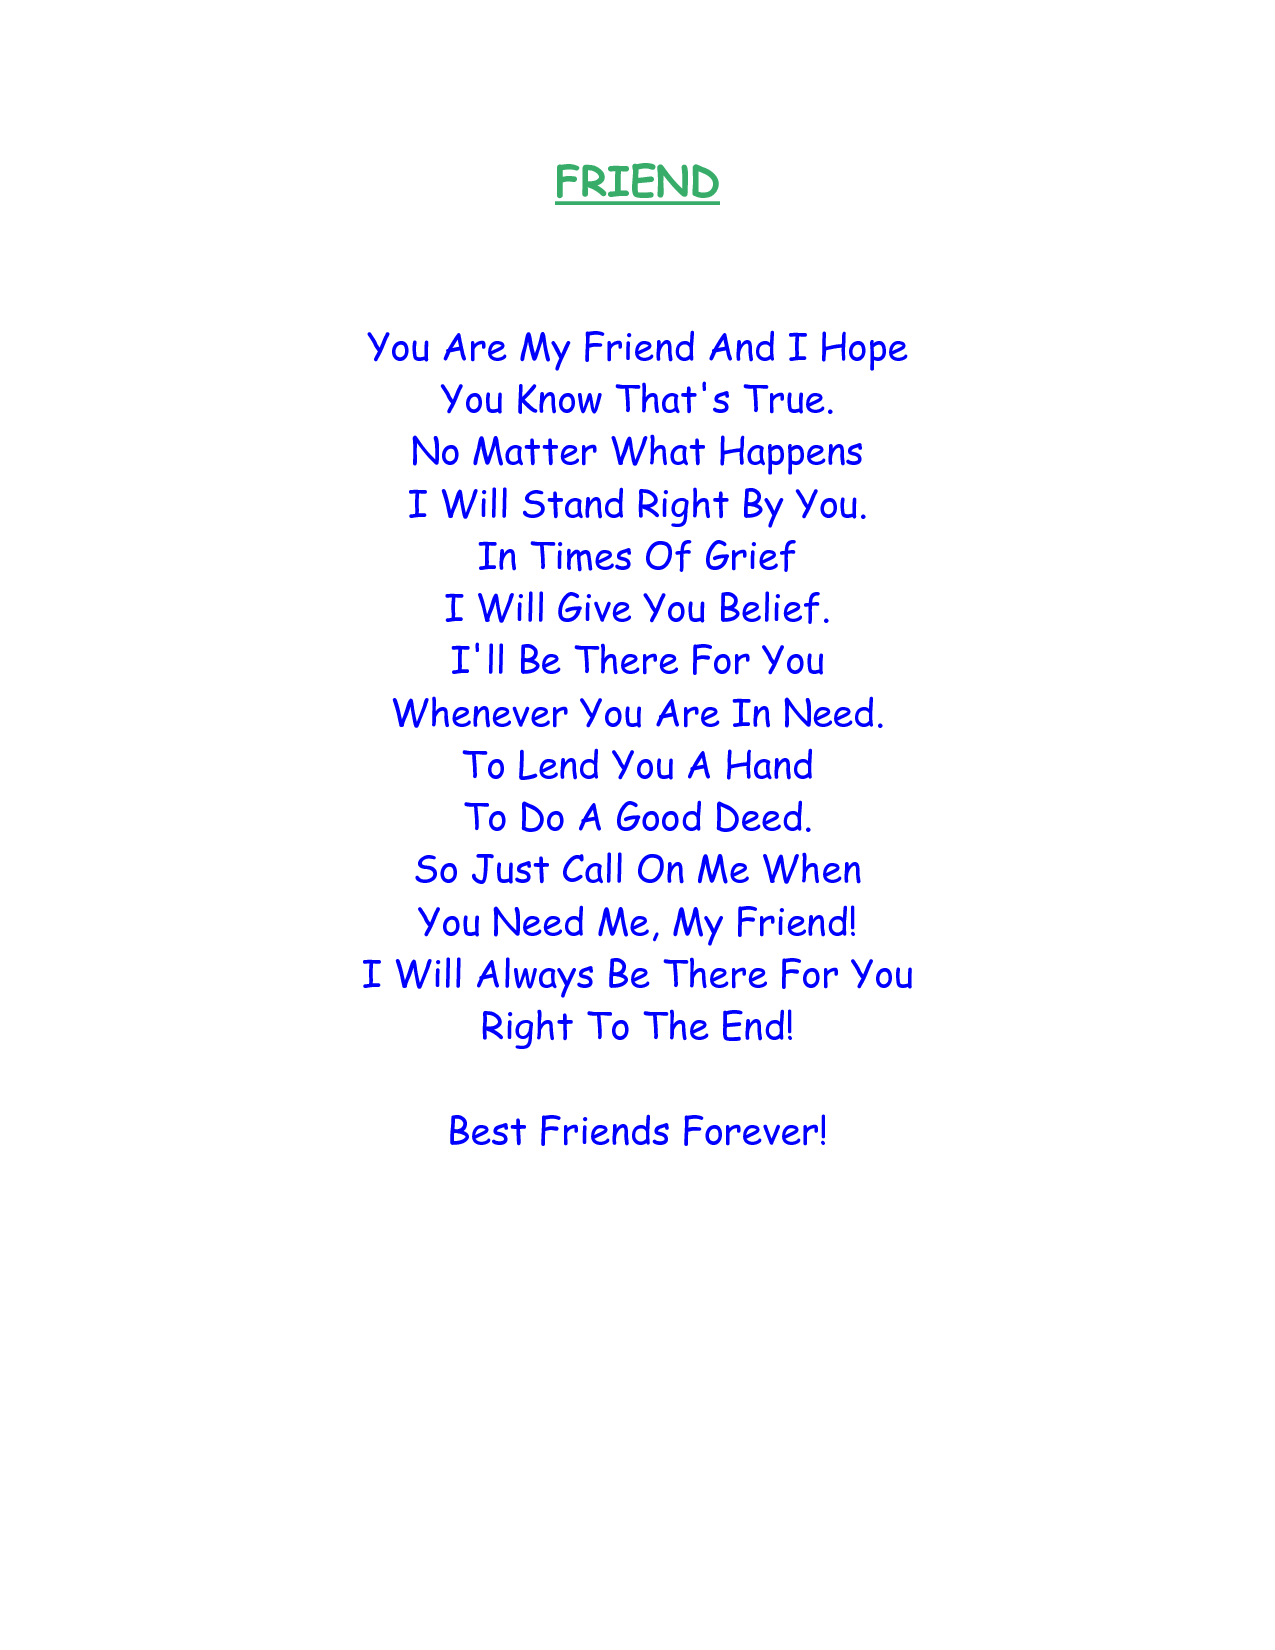 Bestfriend poems short 43 Best